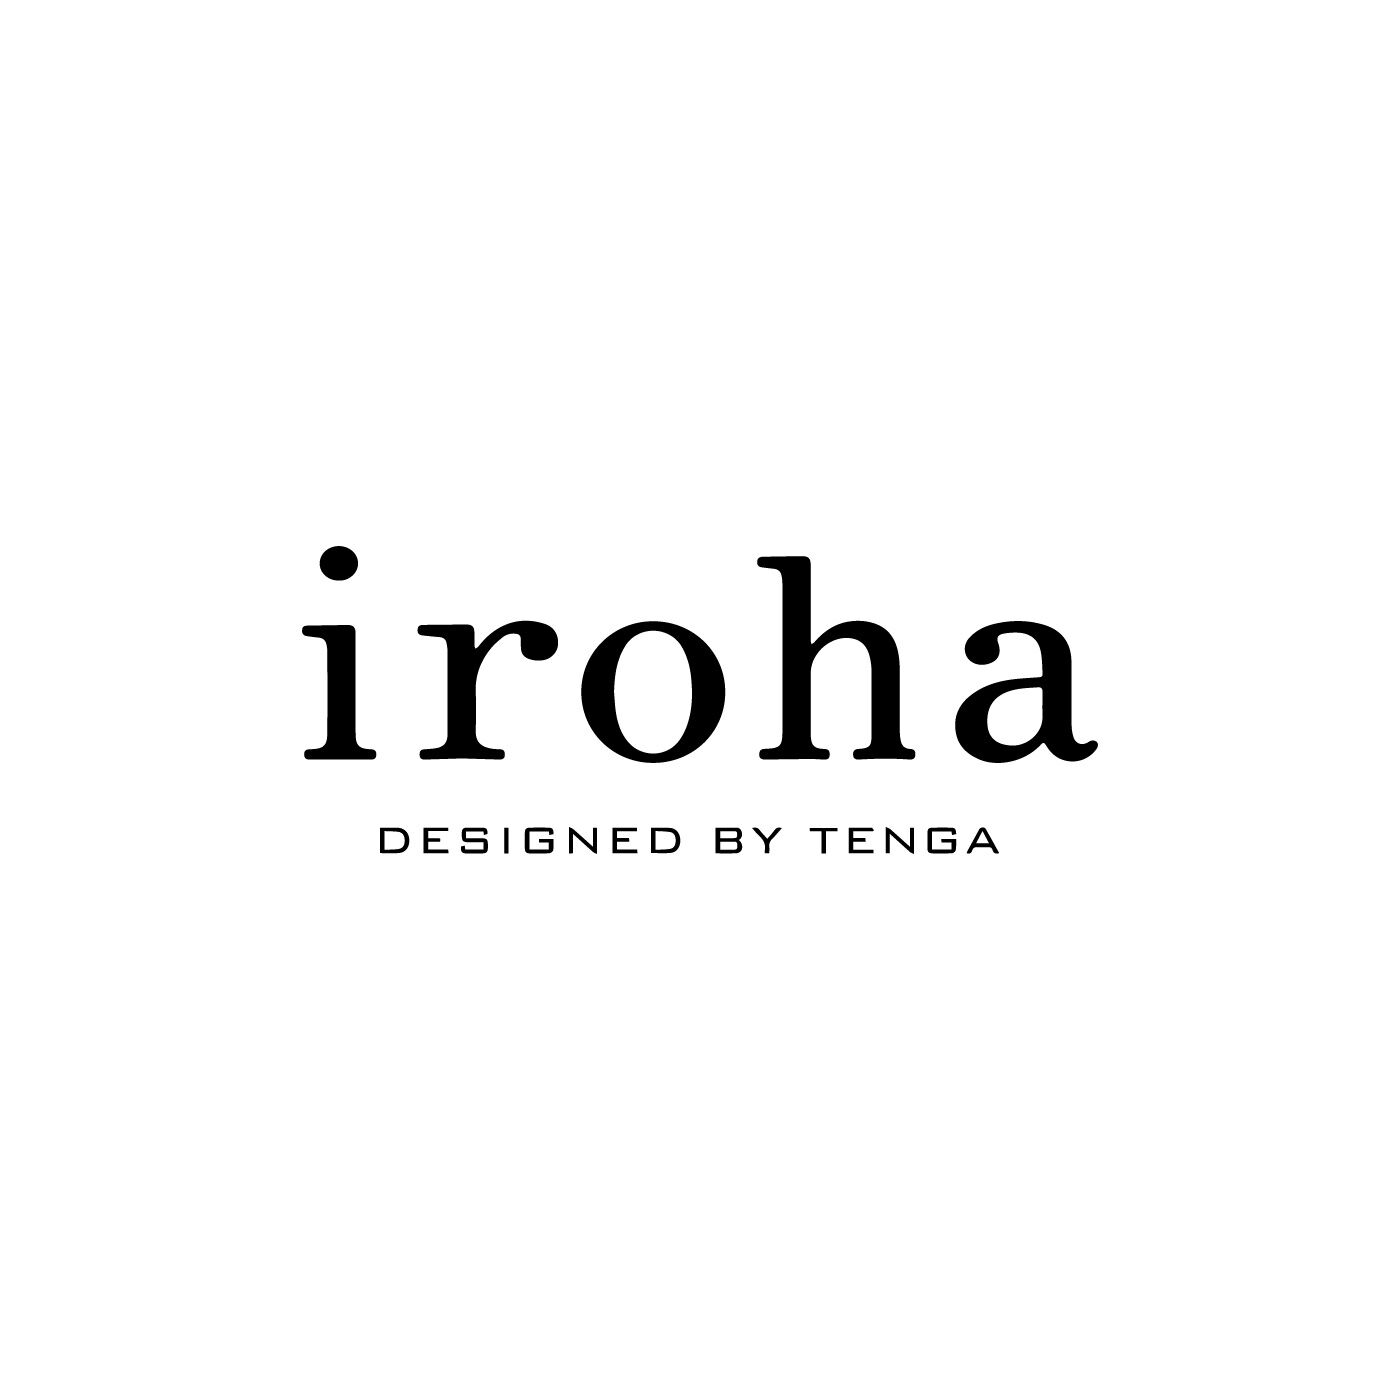 フェリシモコレクション|iroha　mini　うめあんず|寝る前にパックをするように、セルフケアのひとつとして、からだが求める「気持ちよさ」に応えることは、もっと大切にしてもいいこと。そんな思いで2013年3月から「iroha」はスタートしました。